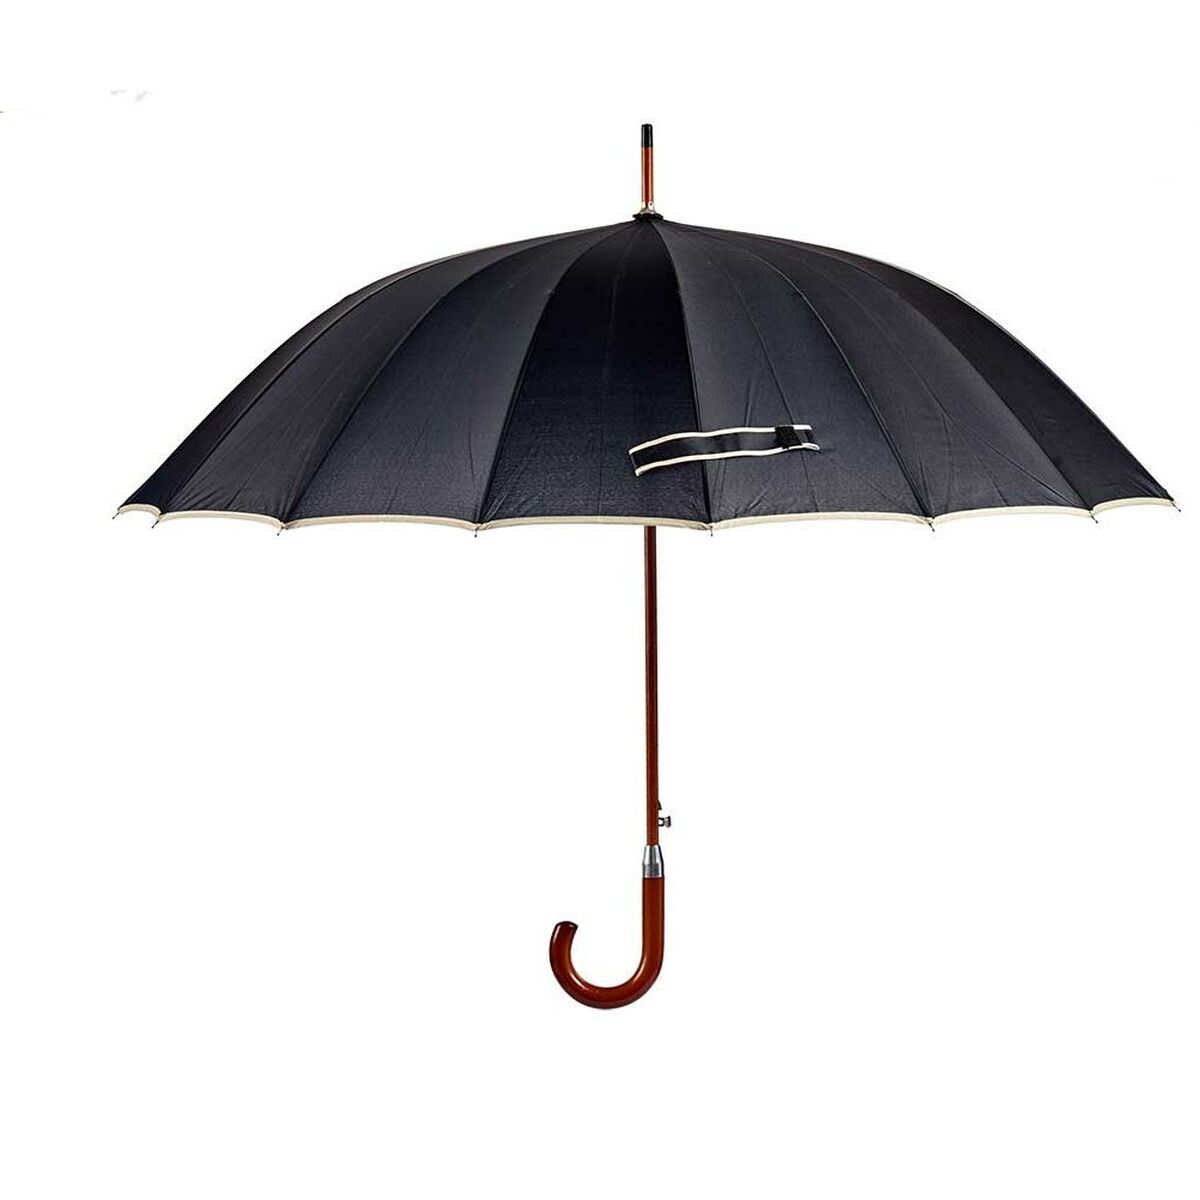 Paraplu Zwart Metaal Stof 110 x 110 x 95cm (24 Stuks)